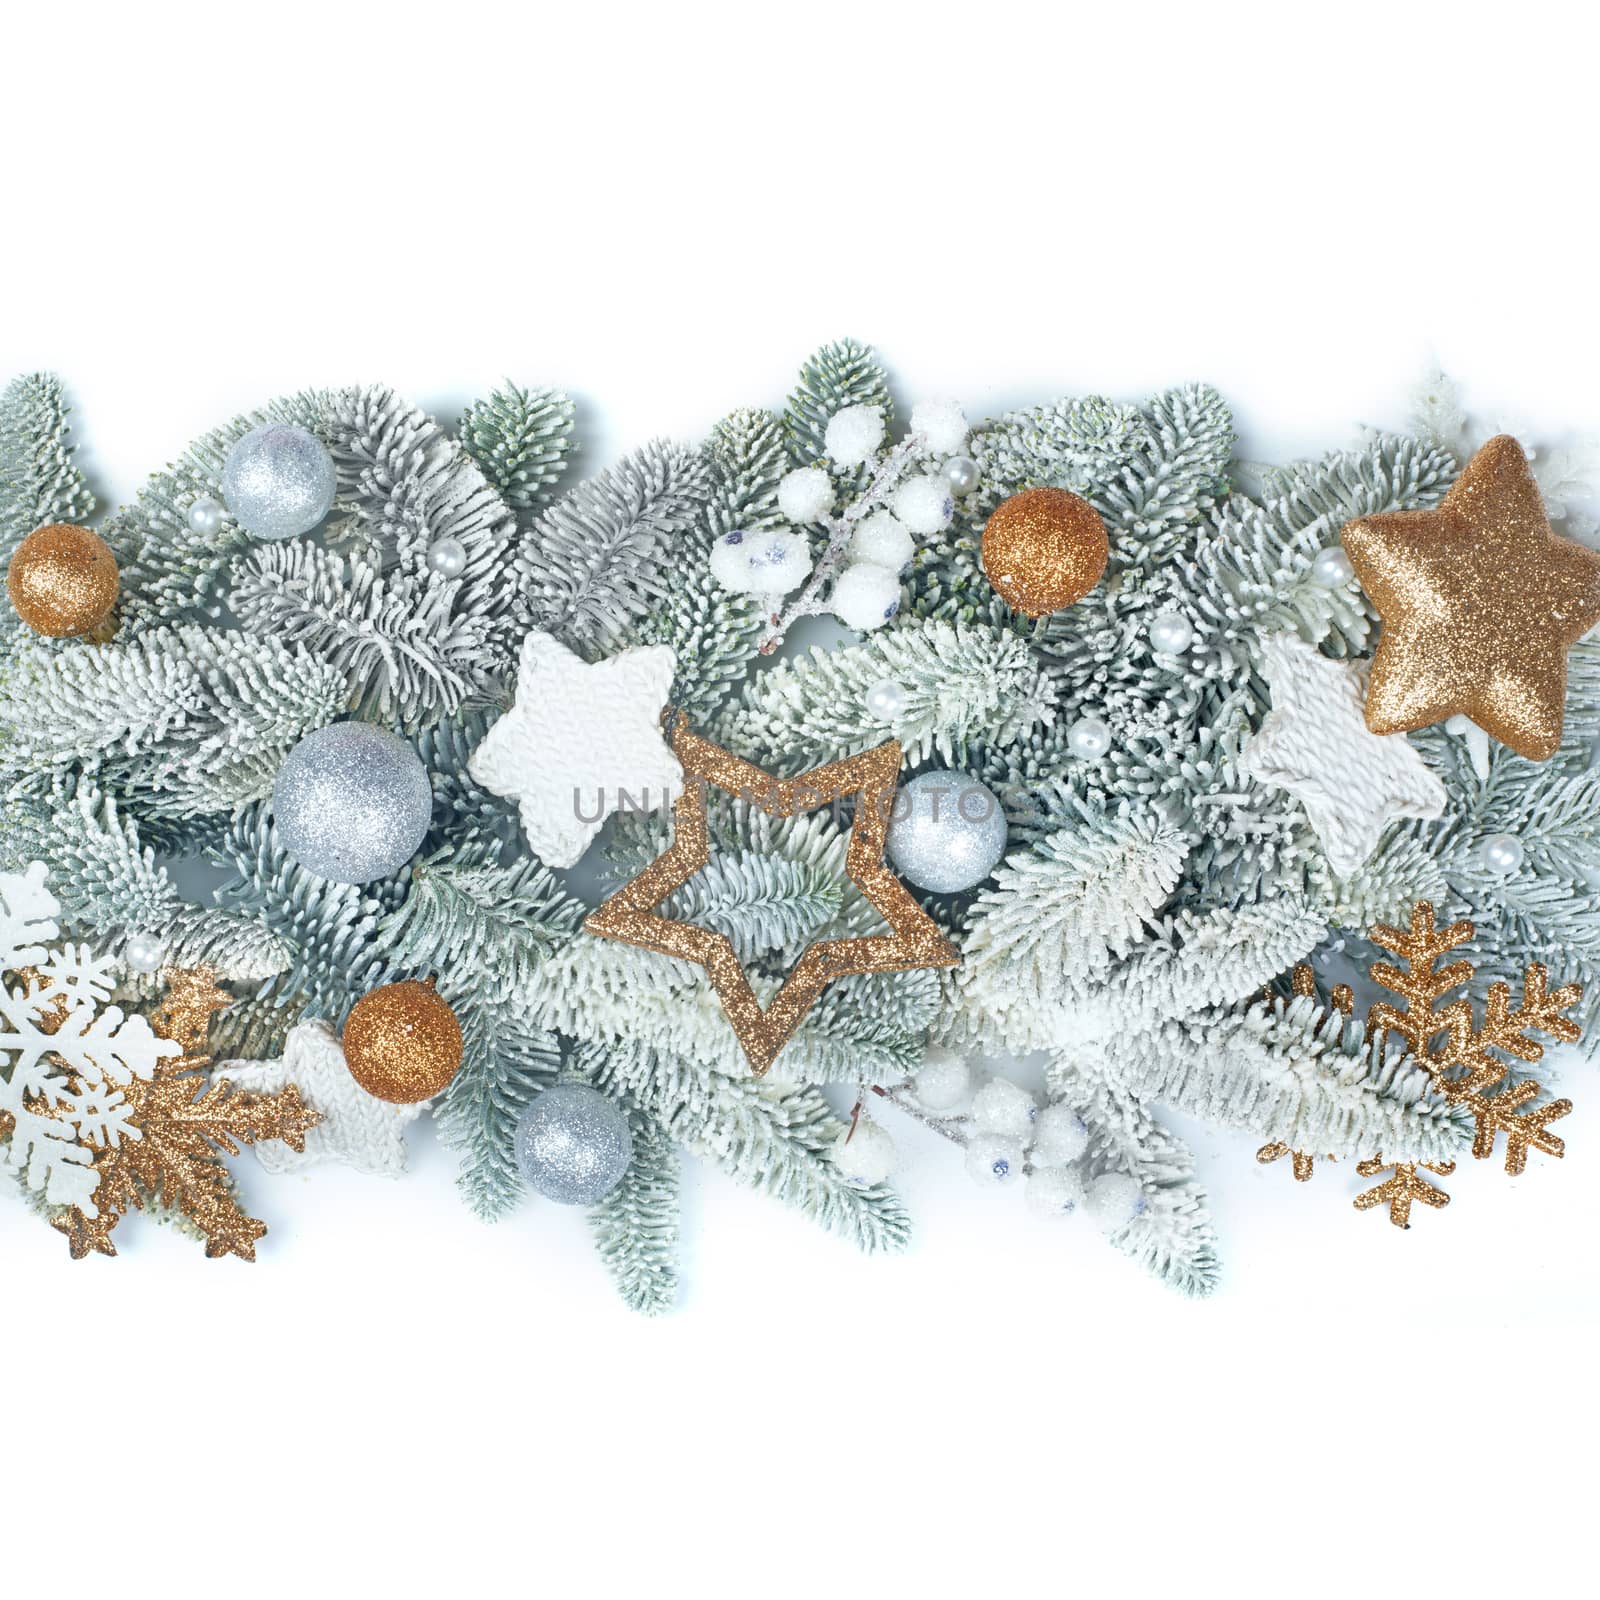 Frost fir tree and Christmas decor by destillat